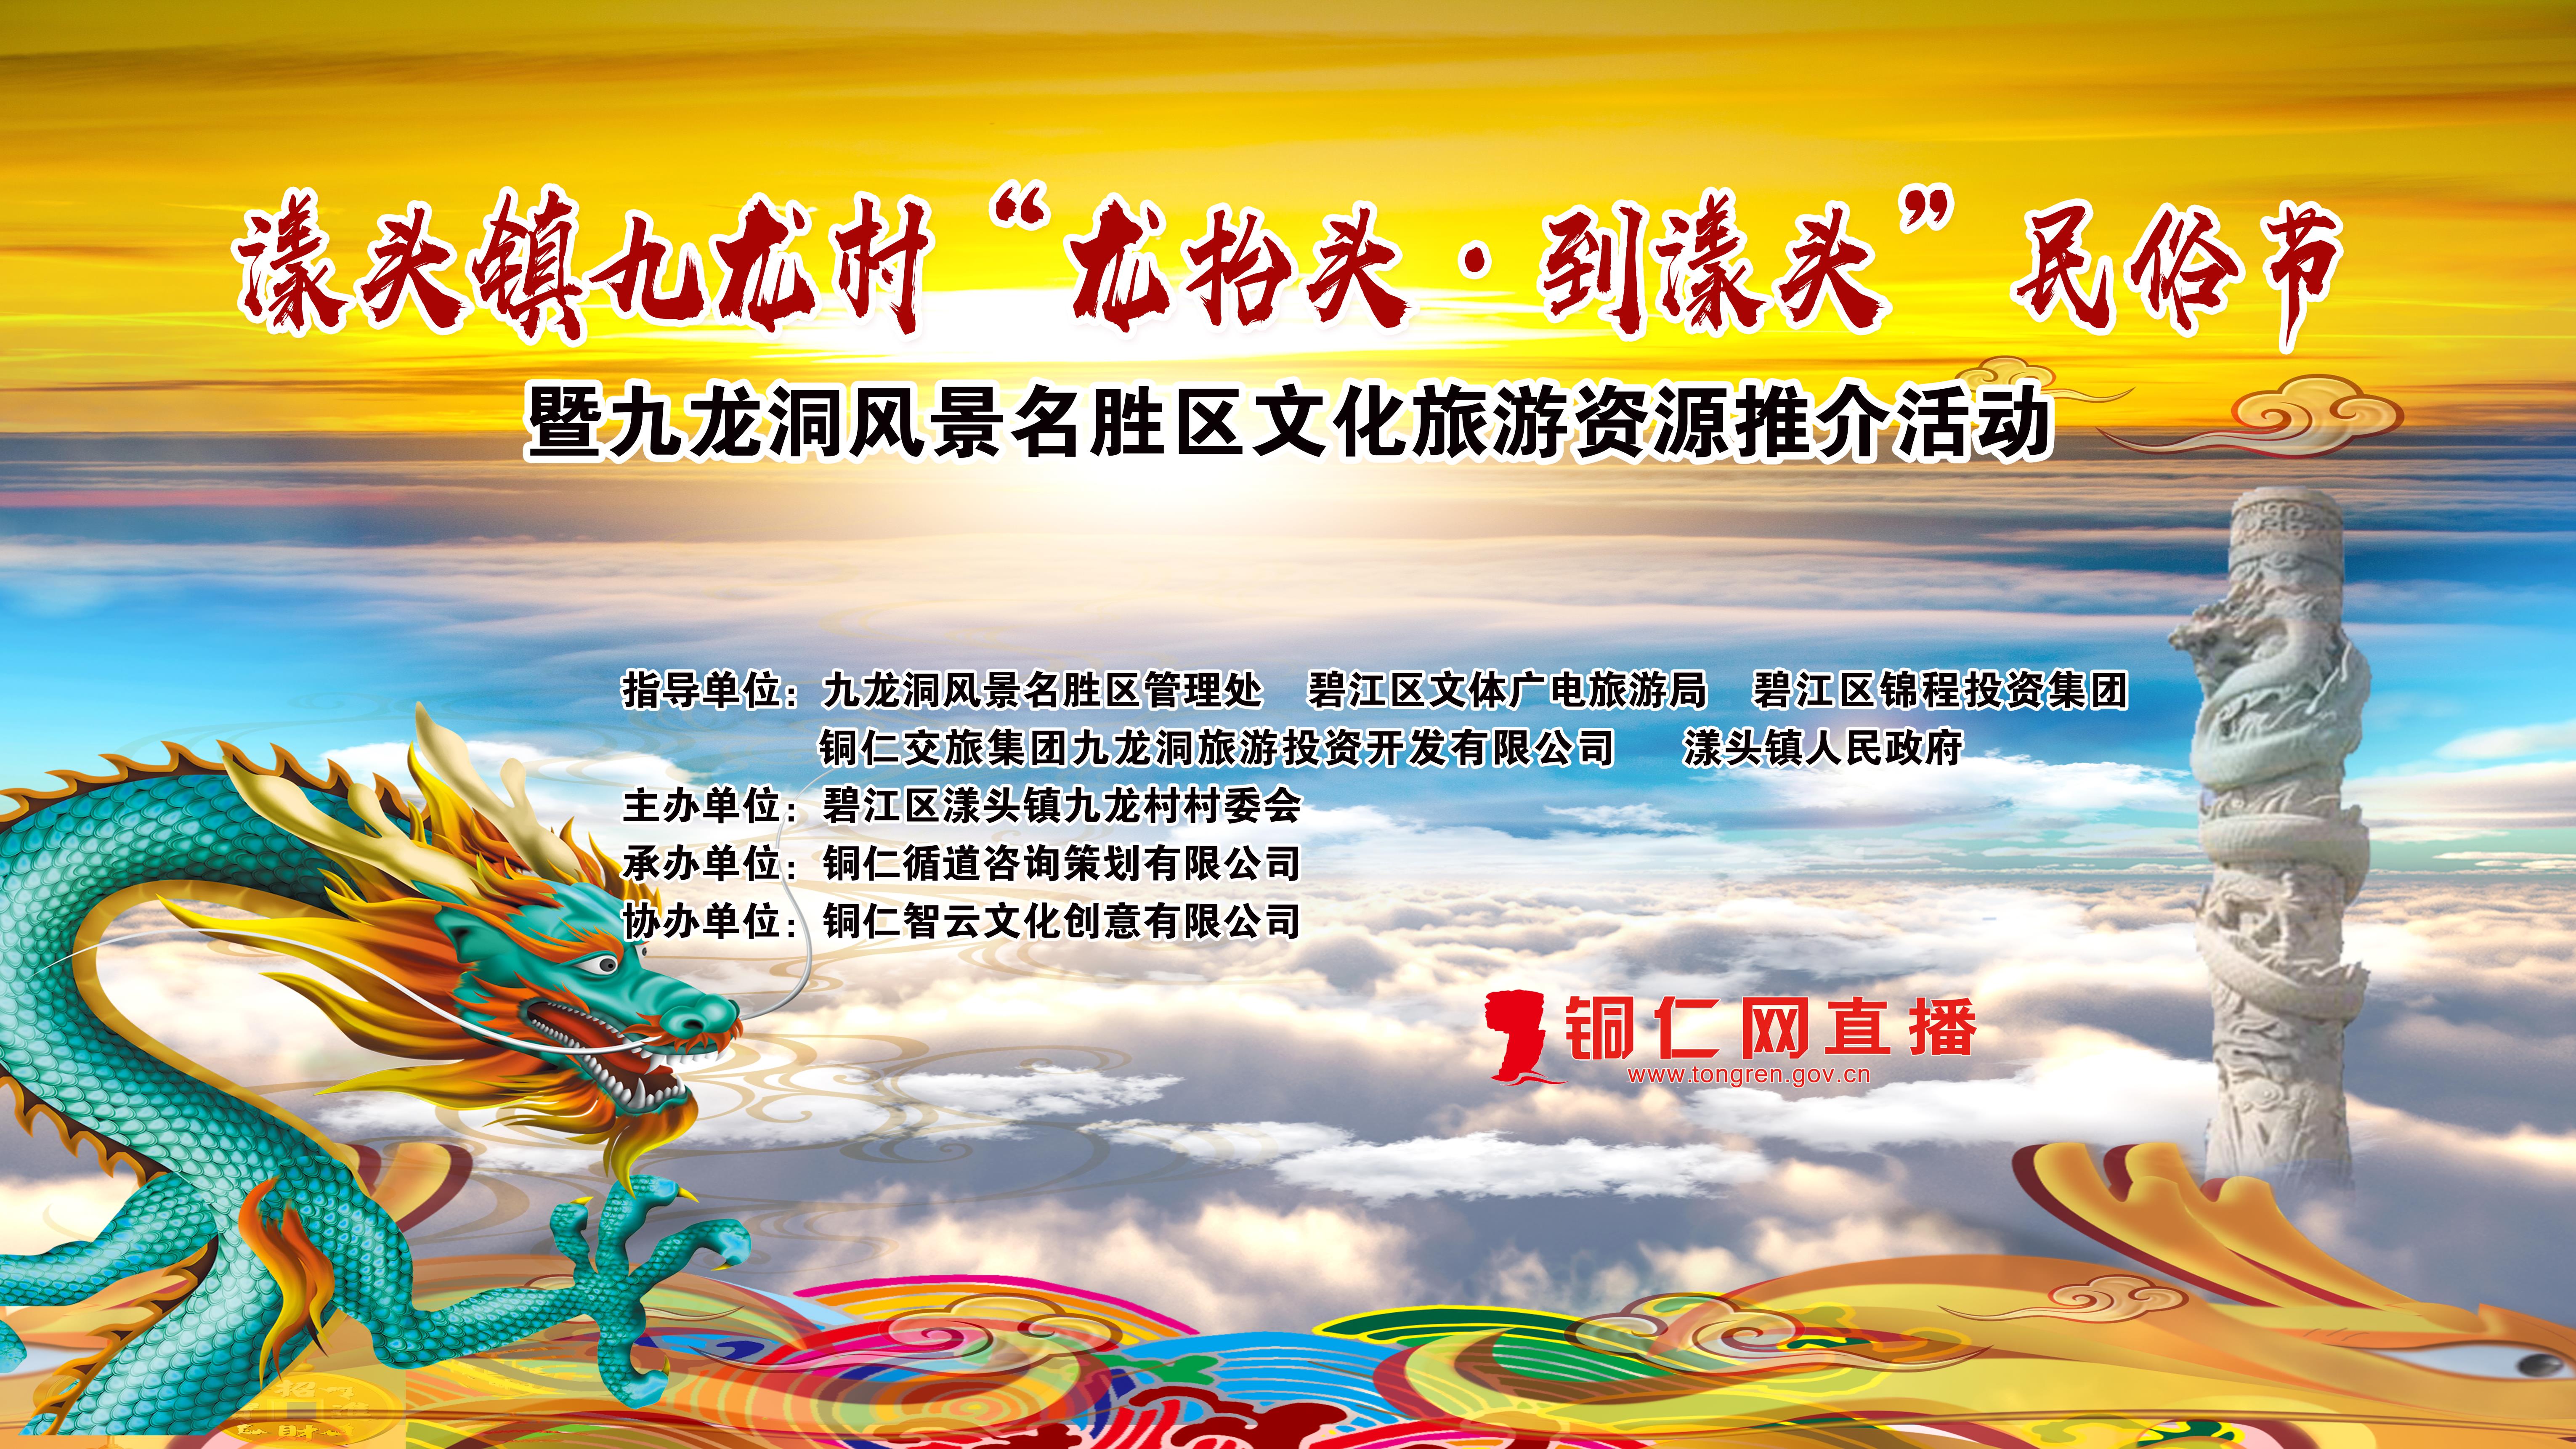 【视频】“龙抬头·到漾头”民俗节暨九龙洞文化旅游资源推介活动